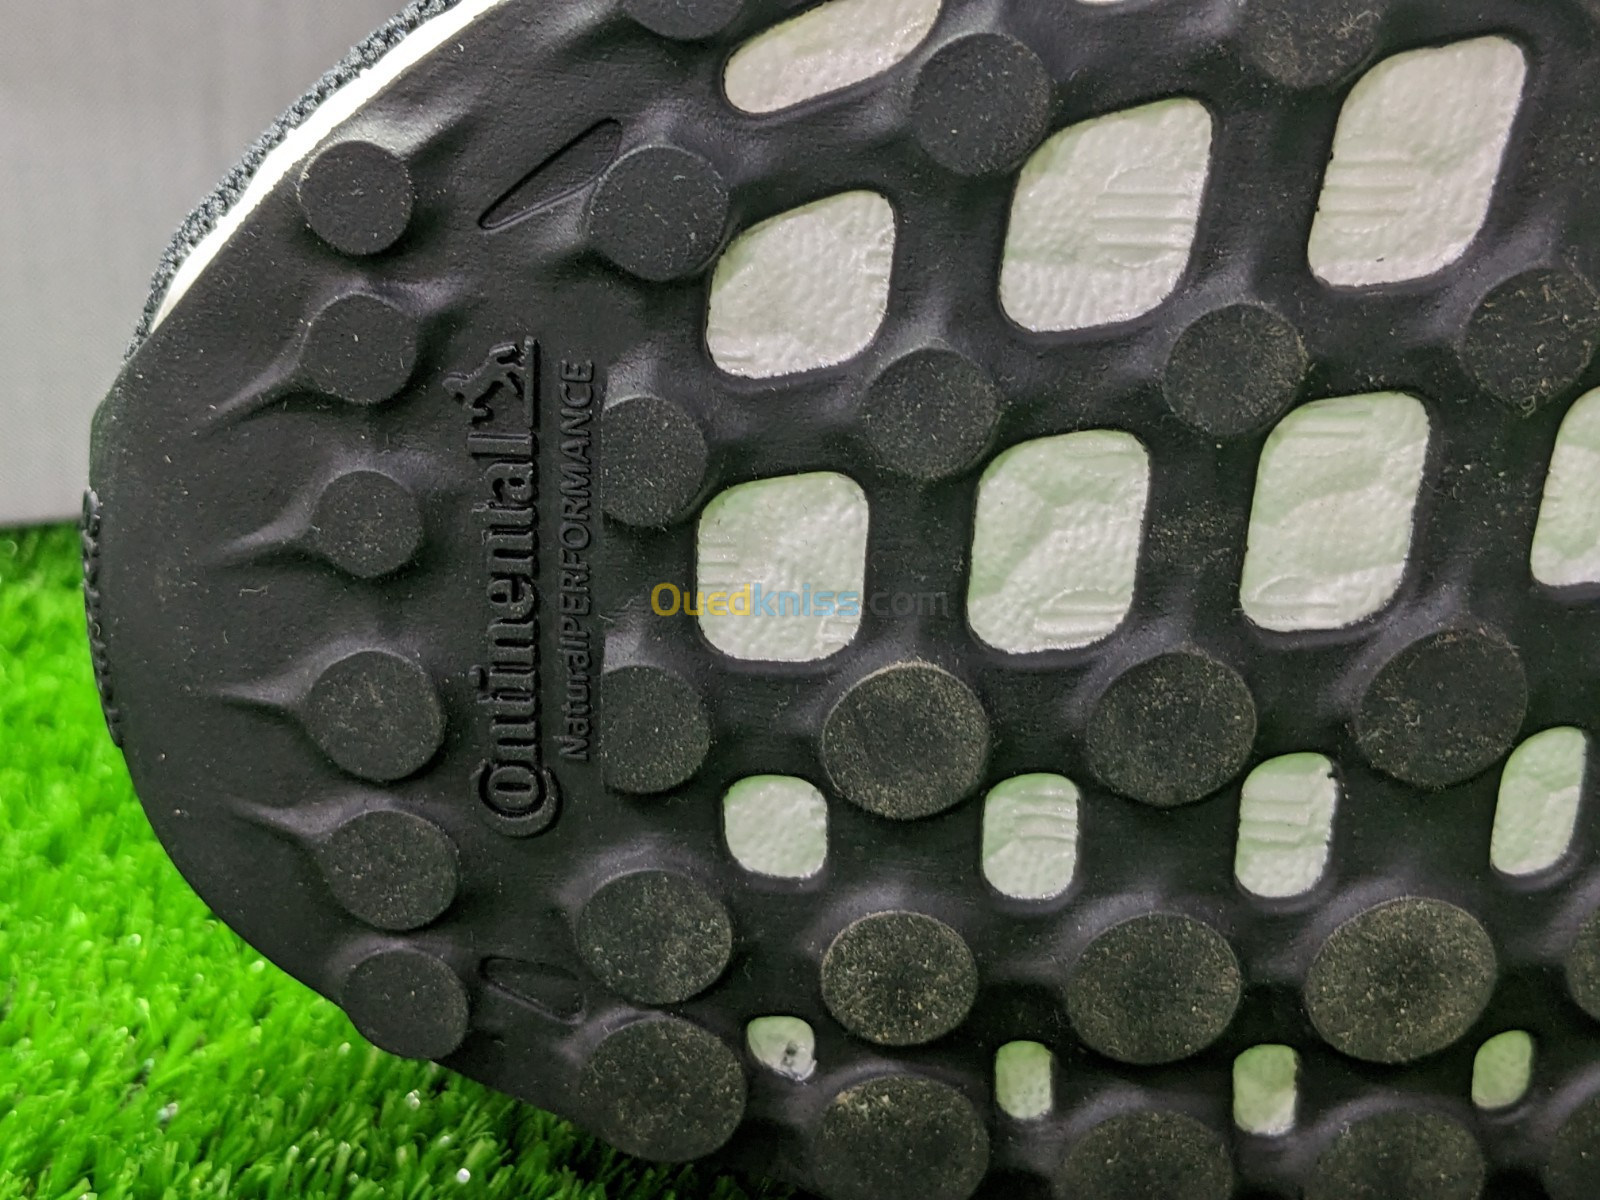 Adidas CHAUSSURE ULTRABOOST 5 DNA RUNNING - Ref GV8749 - Original اصلية - Pointure 46 2/3 / 30 CM